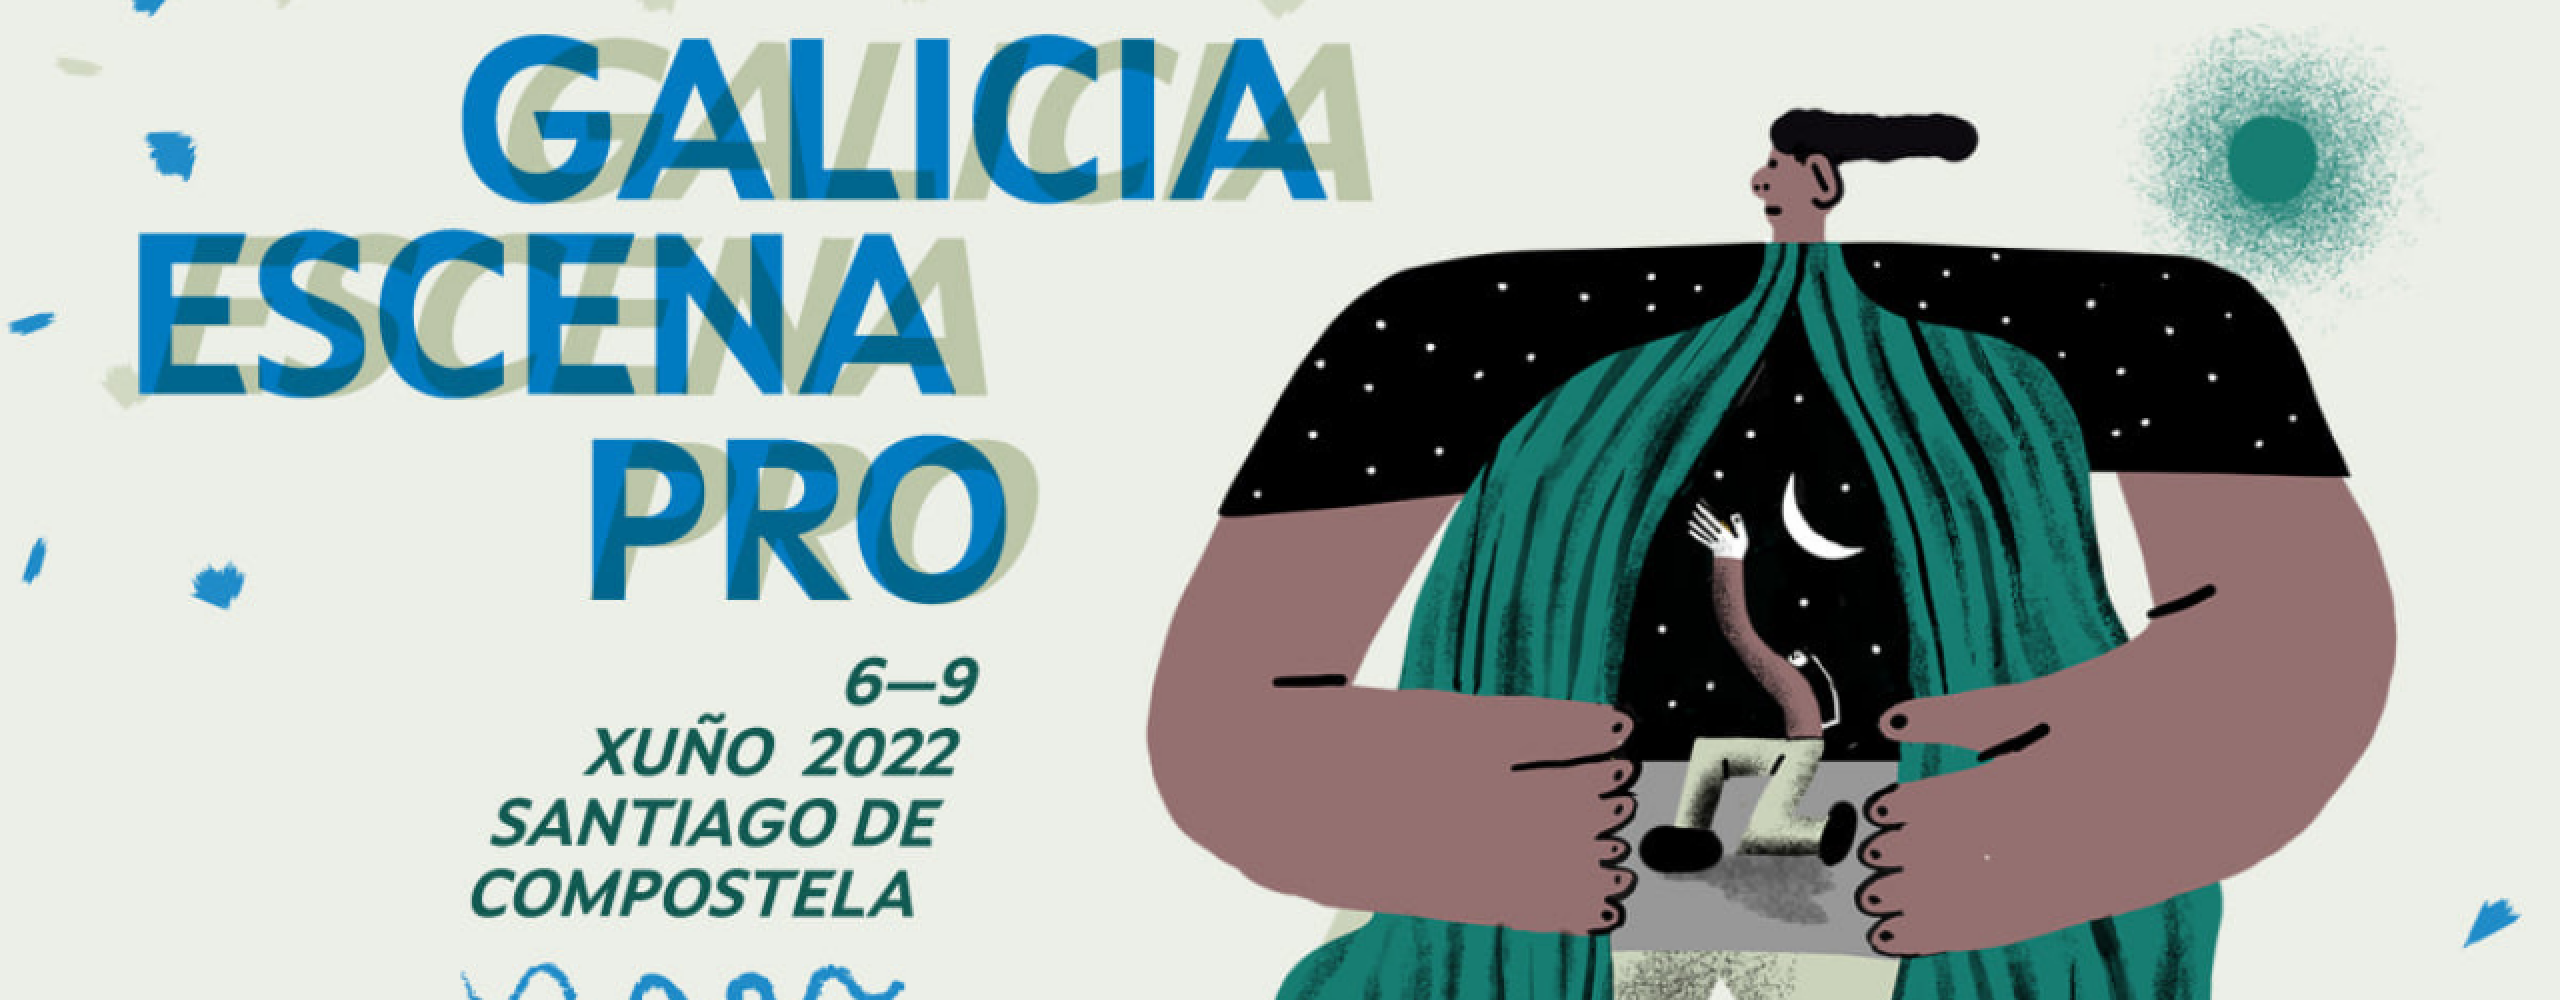 Aberto o prazo de presentación de espectáculos para a 9ª edición de Galicia Escena PRO, o mercado galego de artes escénicas que coorganizamos coa Axencia Galega das Industrias Culturais 